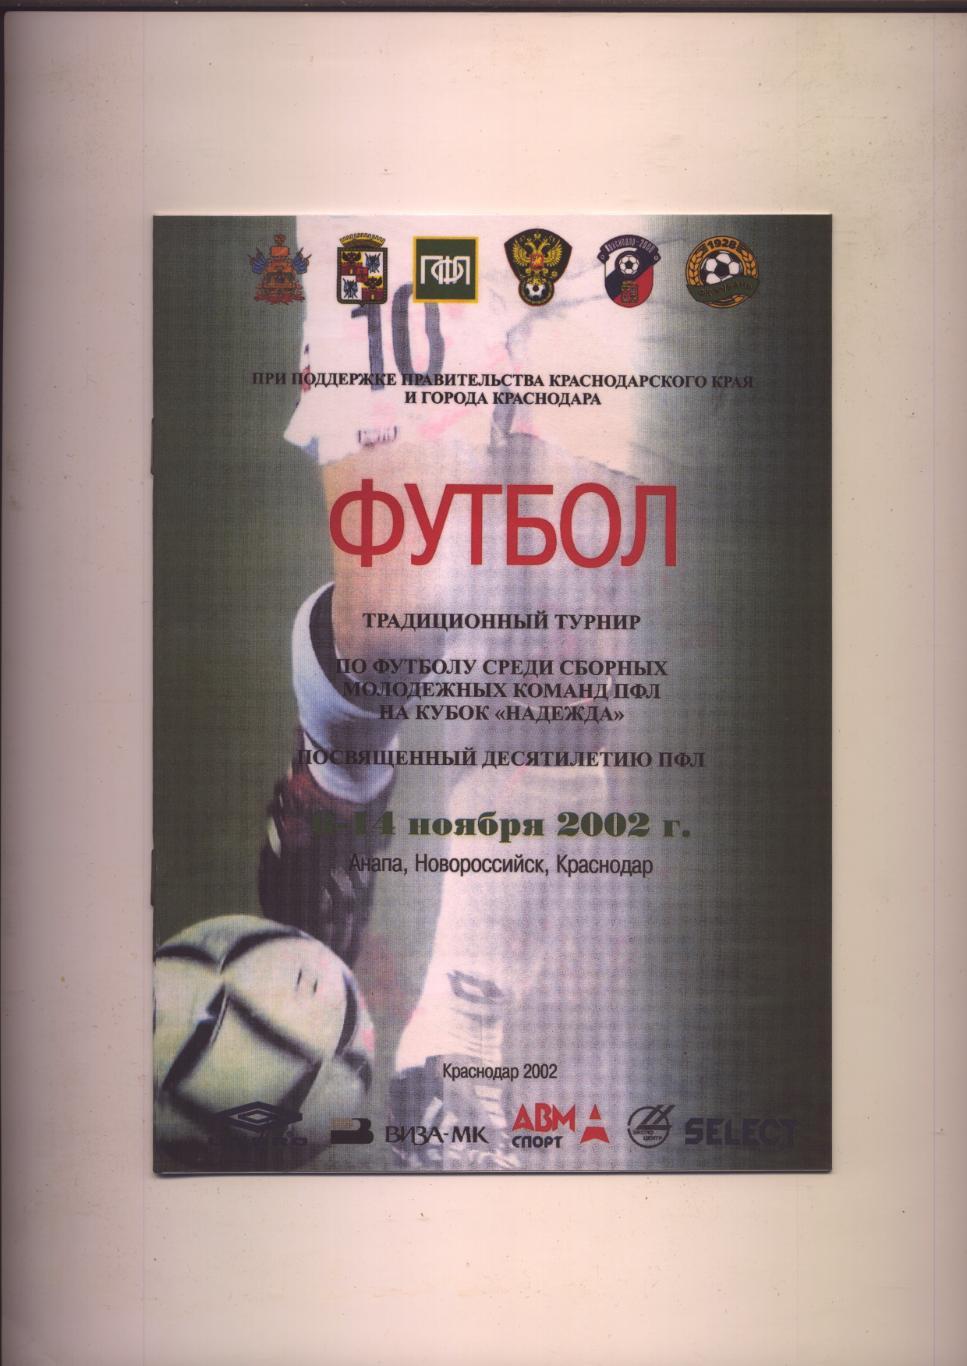 Футбол Турнир Надежда 2002 биографии составы Участников см на фото